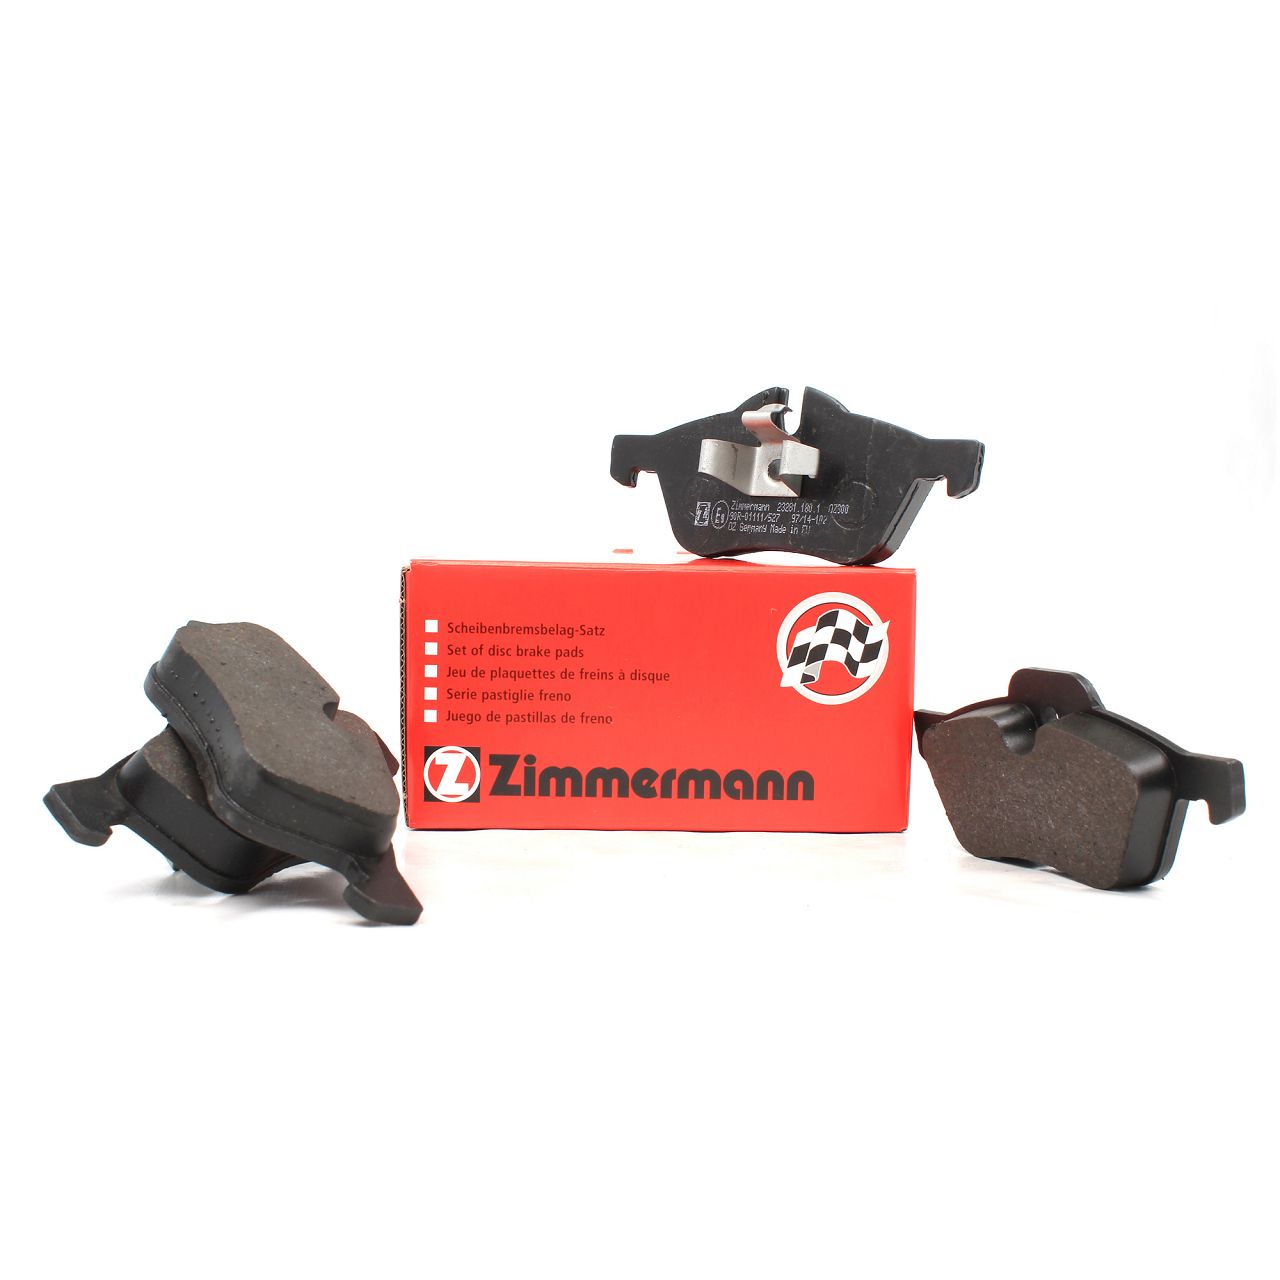 ZIMMERMANN Bremsbeläge Bremsklötze für Mini R50 R53 R52 1.4 Cooper/S One/D vorne